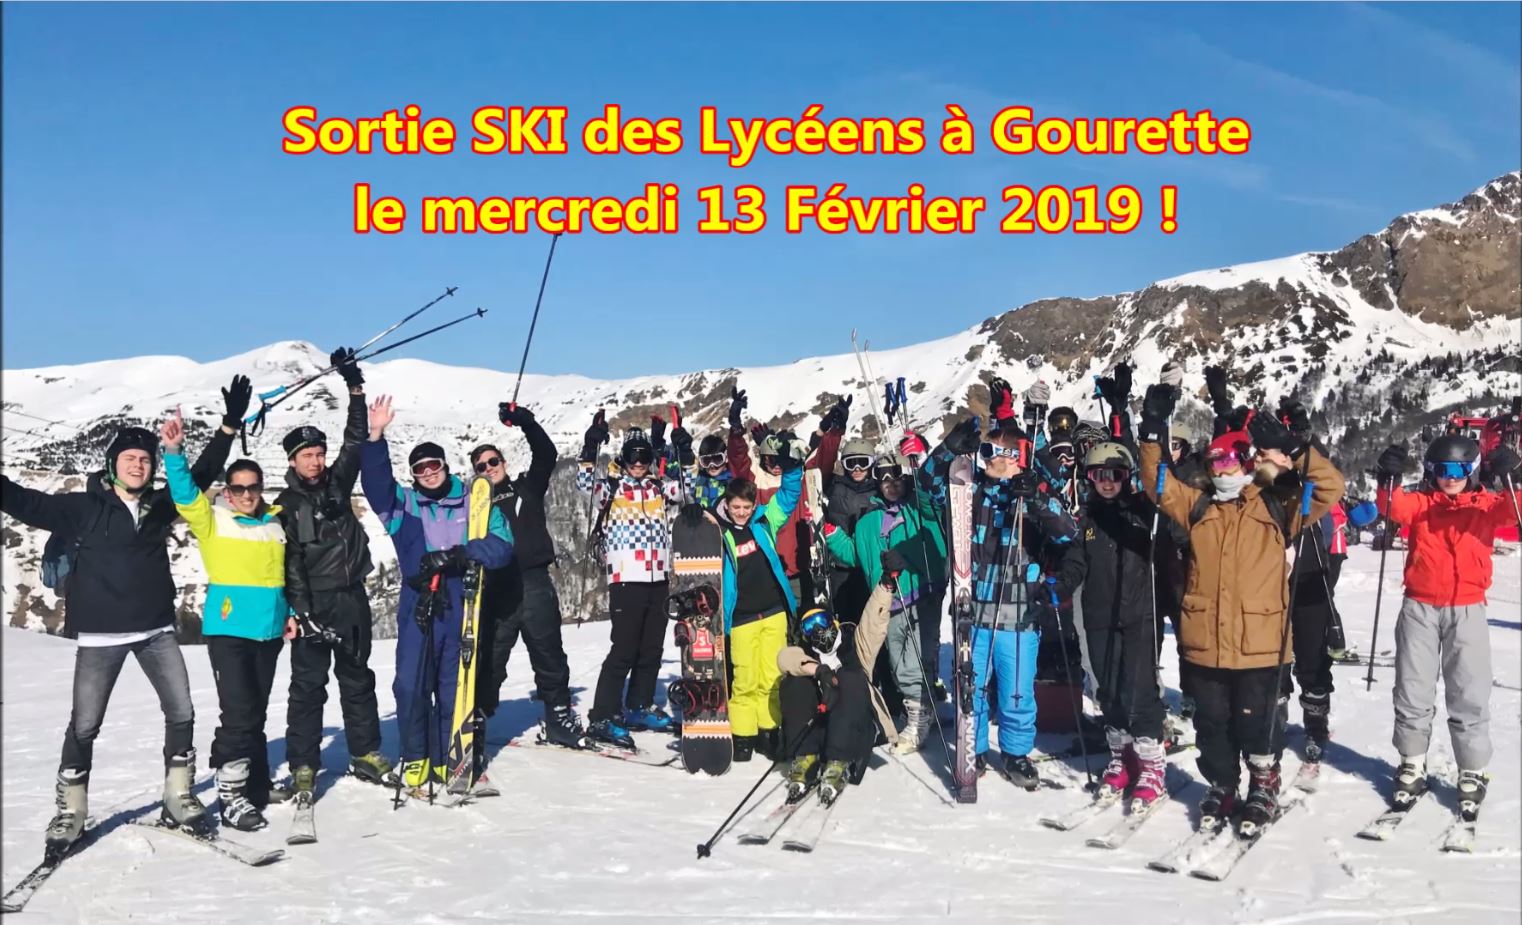 Sortie ski des lycéens à Gourette - Fév. 2019